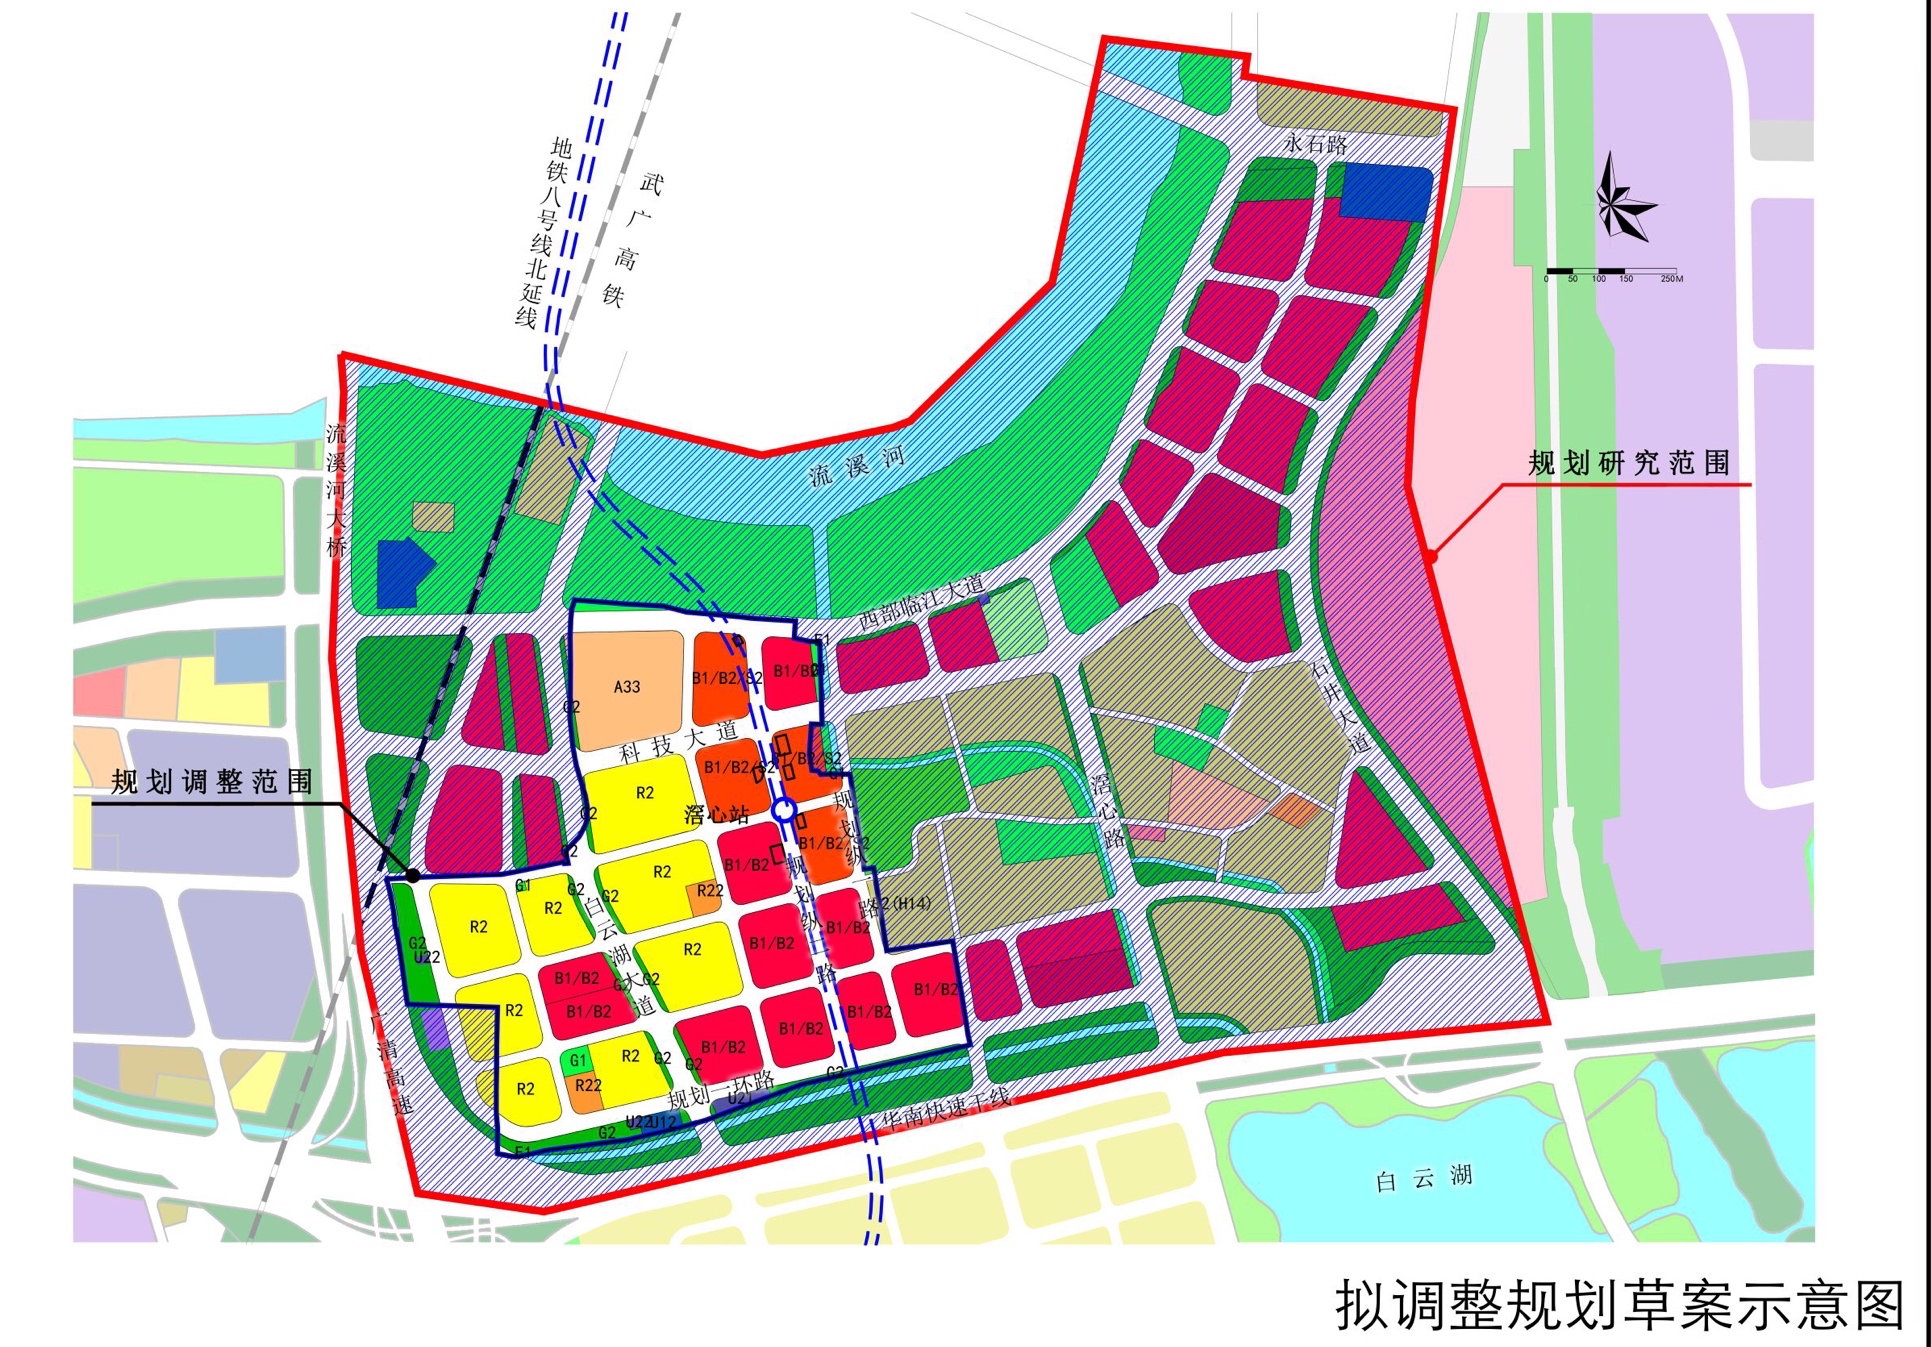 白云湖数字科技城规划分区图本次进行规划调整的是白云湖数字科技城的